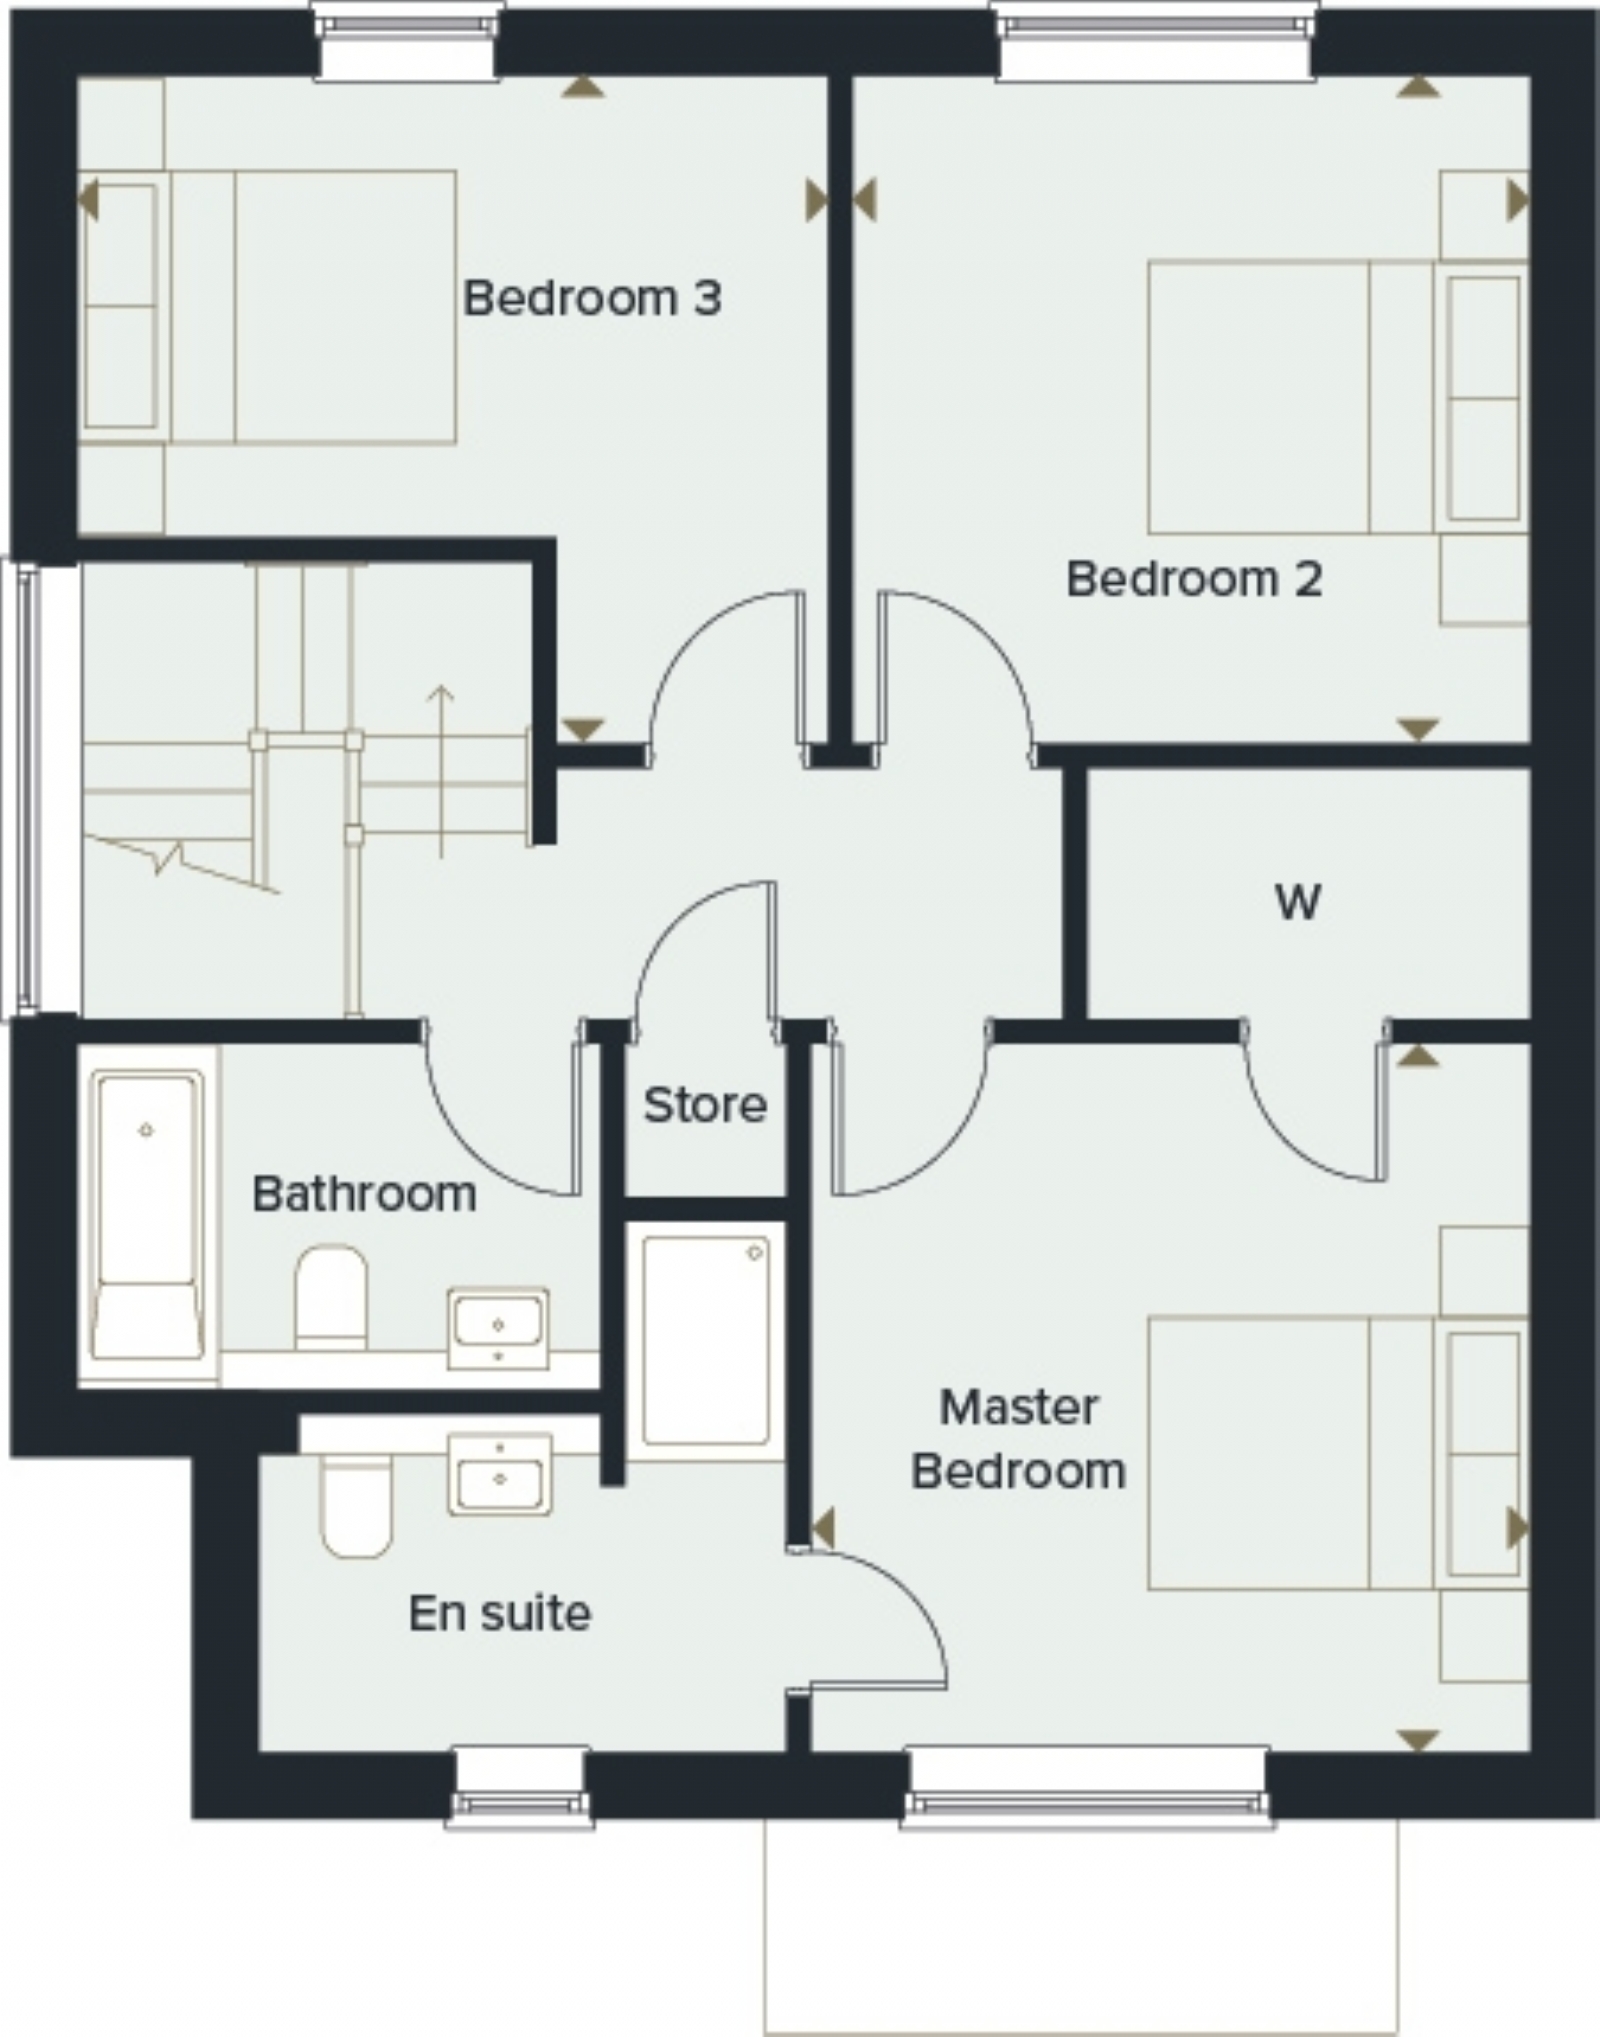 6 Meon View | Floor Plan | First floor